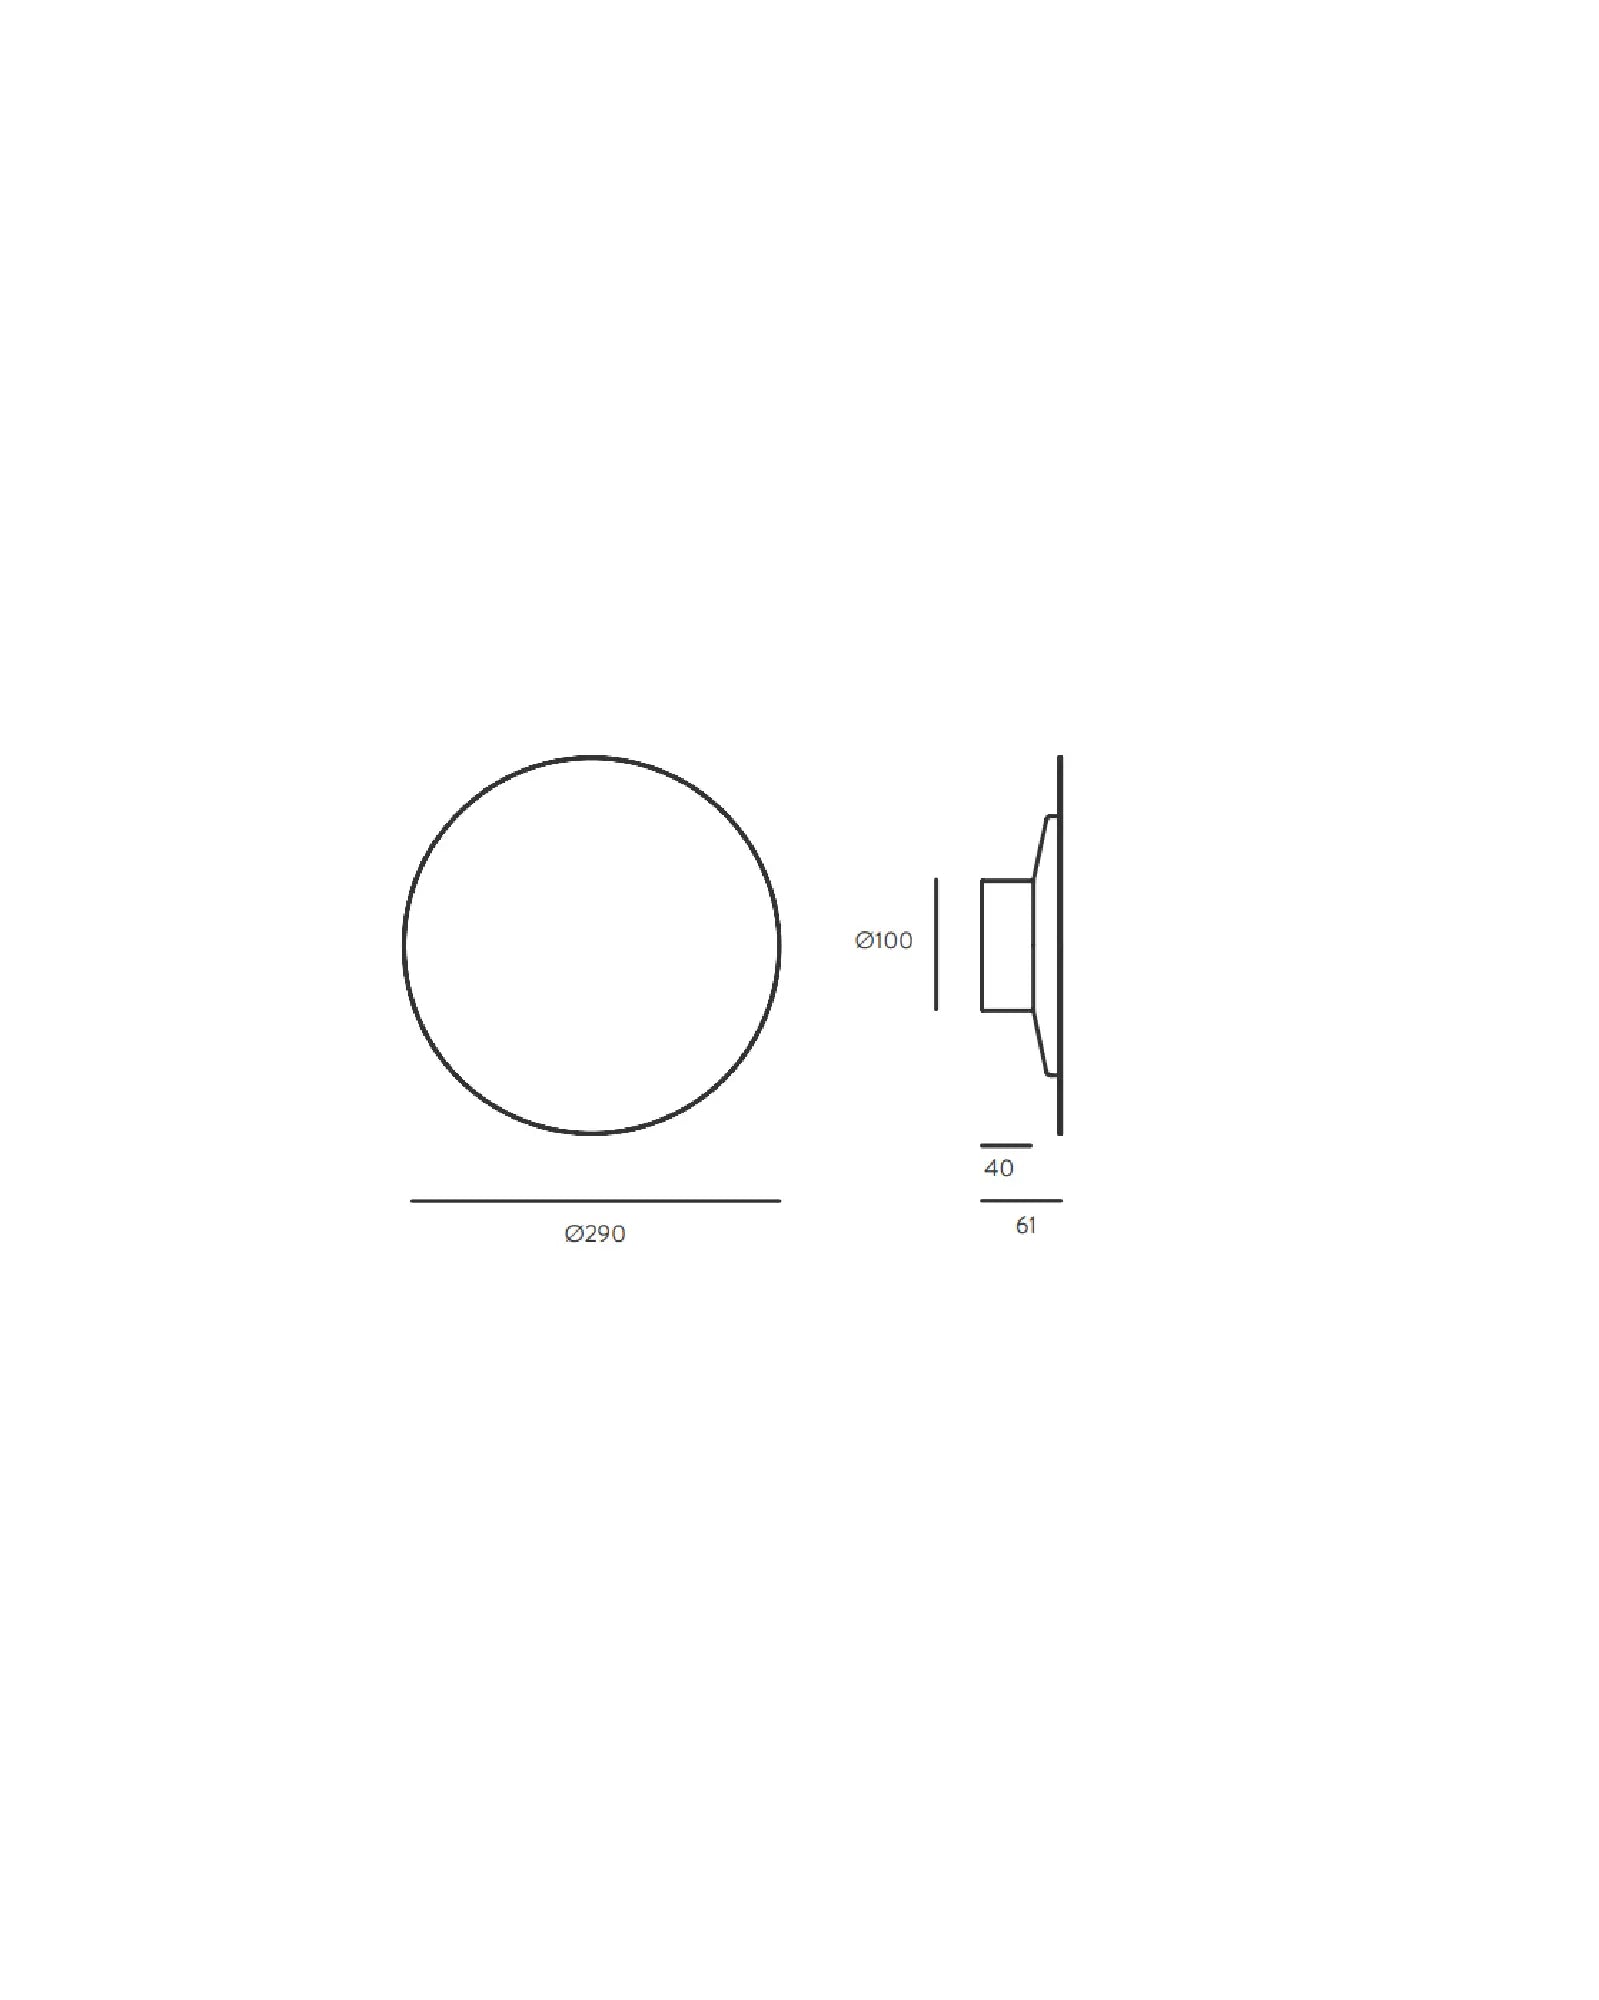 Bot minimalistic circle wall light sizes